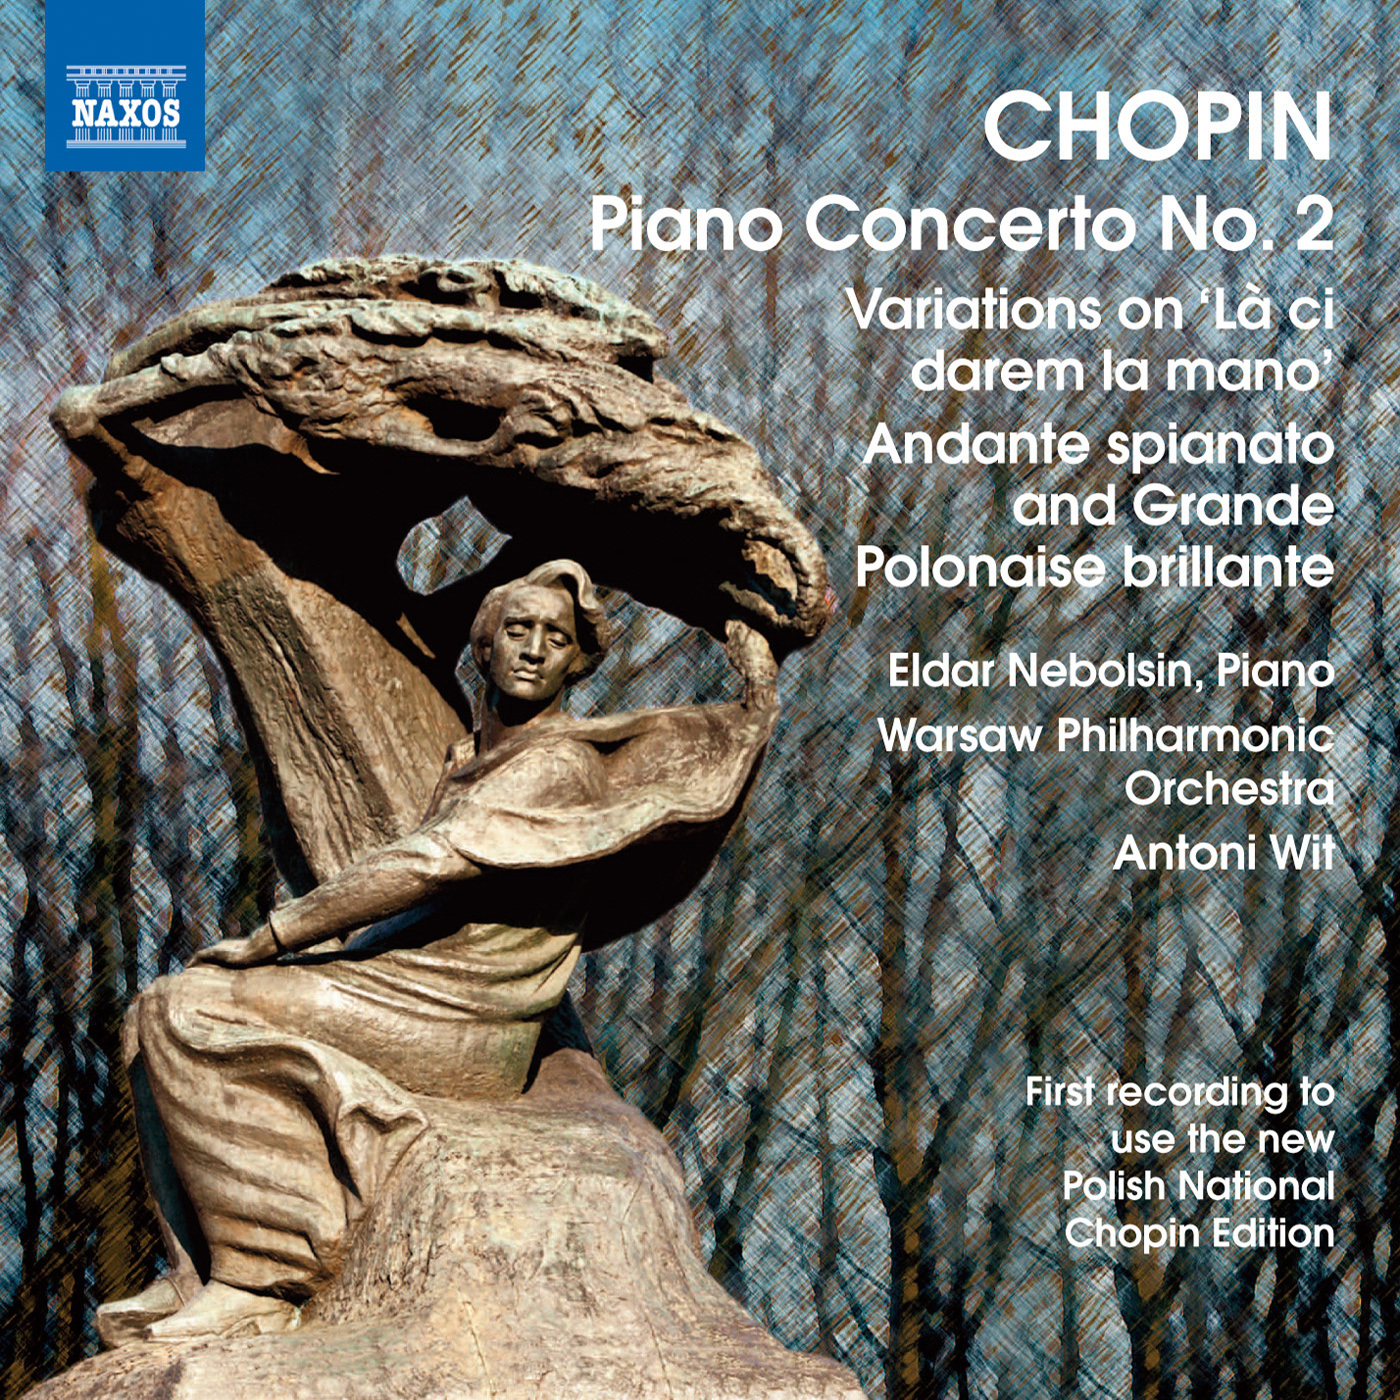 CHOPIN, F.: Piano Concerto No. 2 / Variations on La ci darem / Andante spianato and Grande polonaise brillante (Nebolsin, Warsaw Philharmonic, Wit)